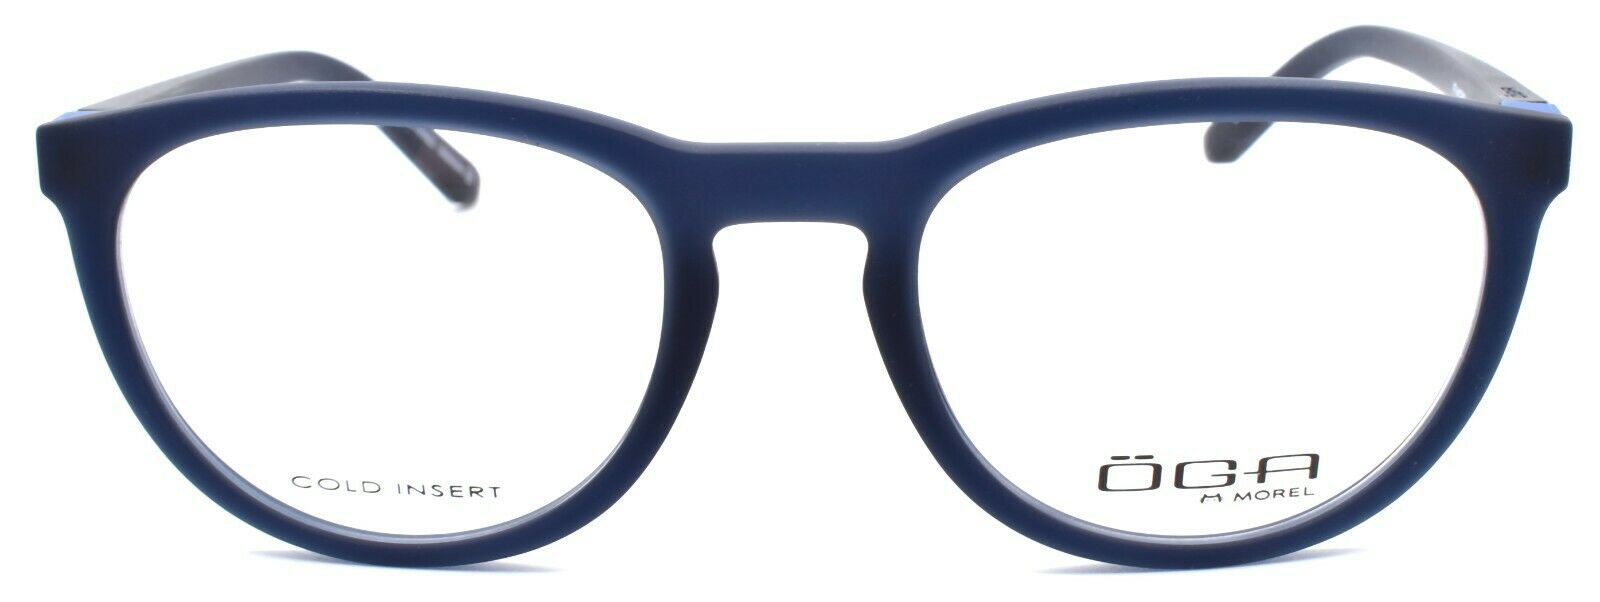 2-OGA by Morel 8204O BB021 Eyeglasses Frames 51-20-140 Dark Blue-3604770897661-IKSpecs